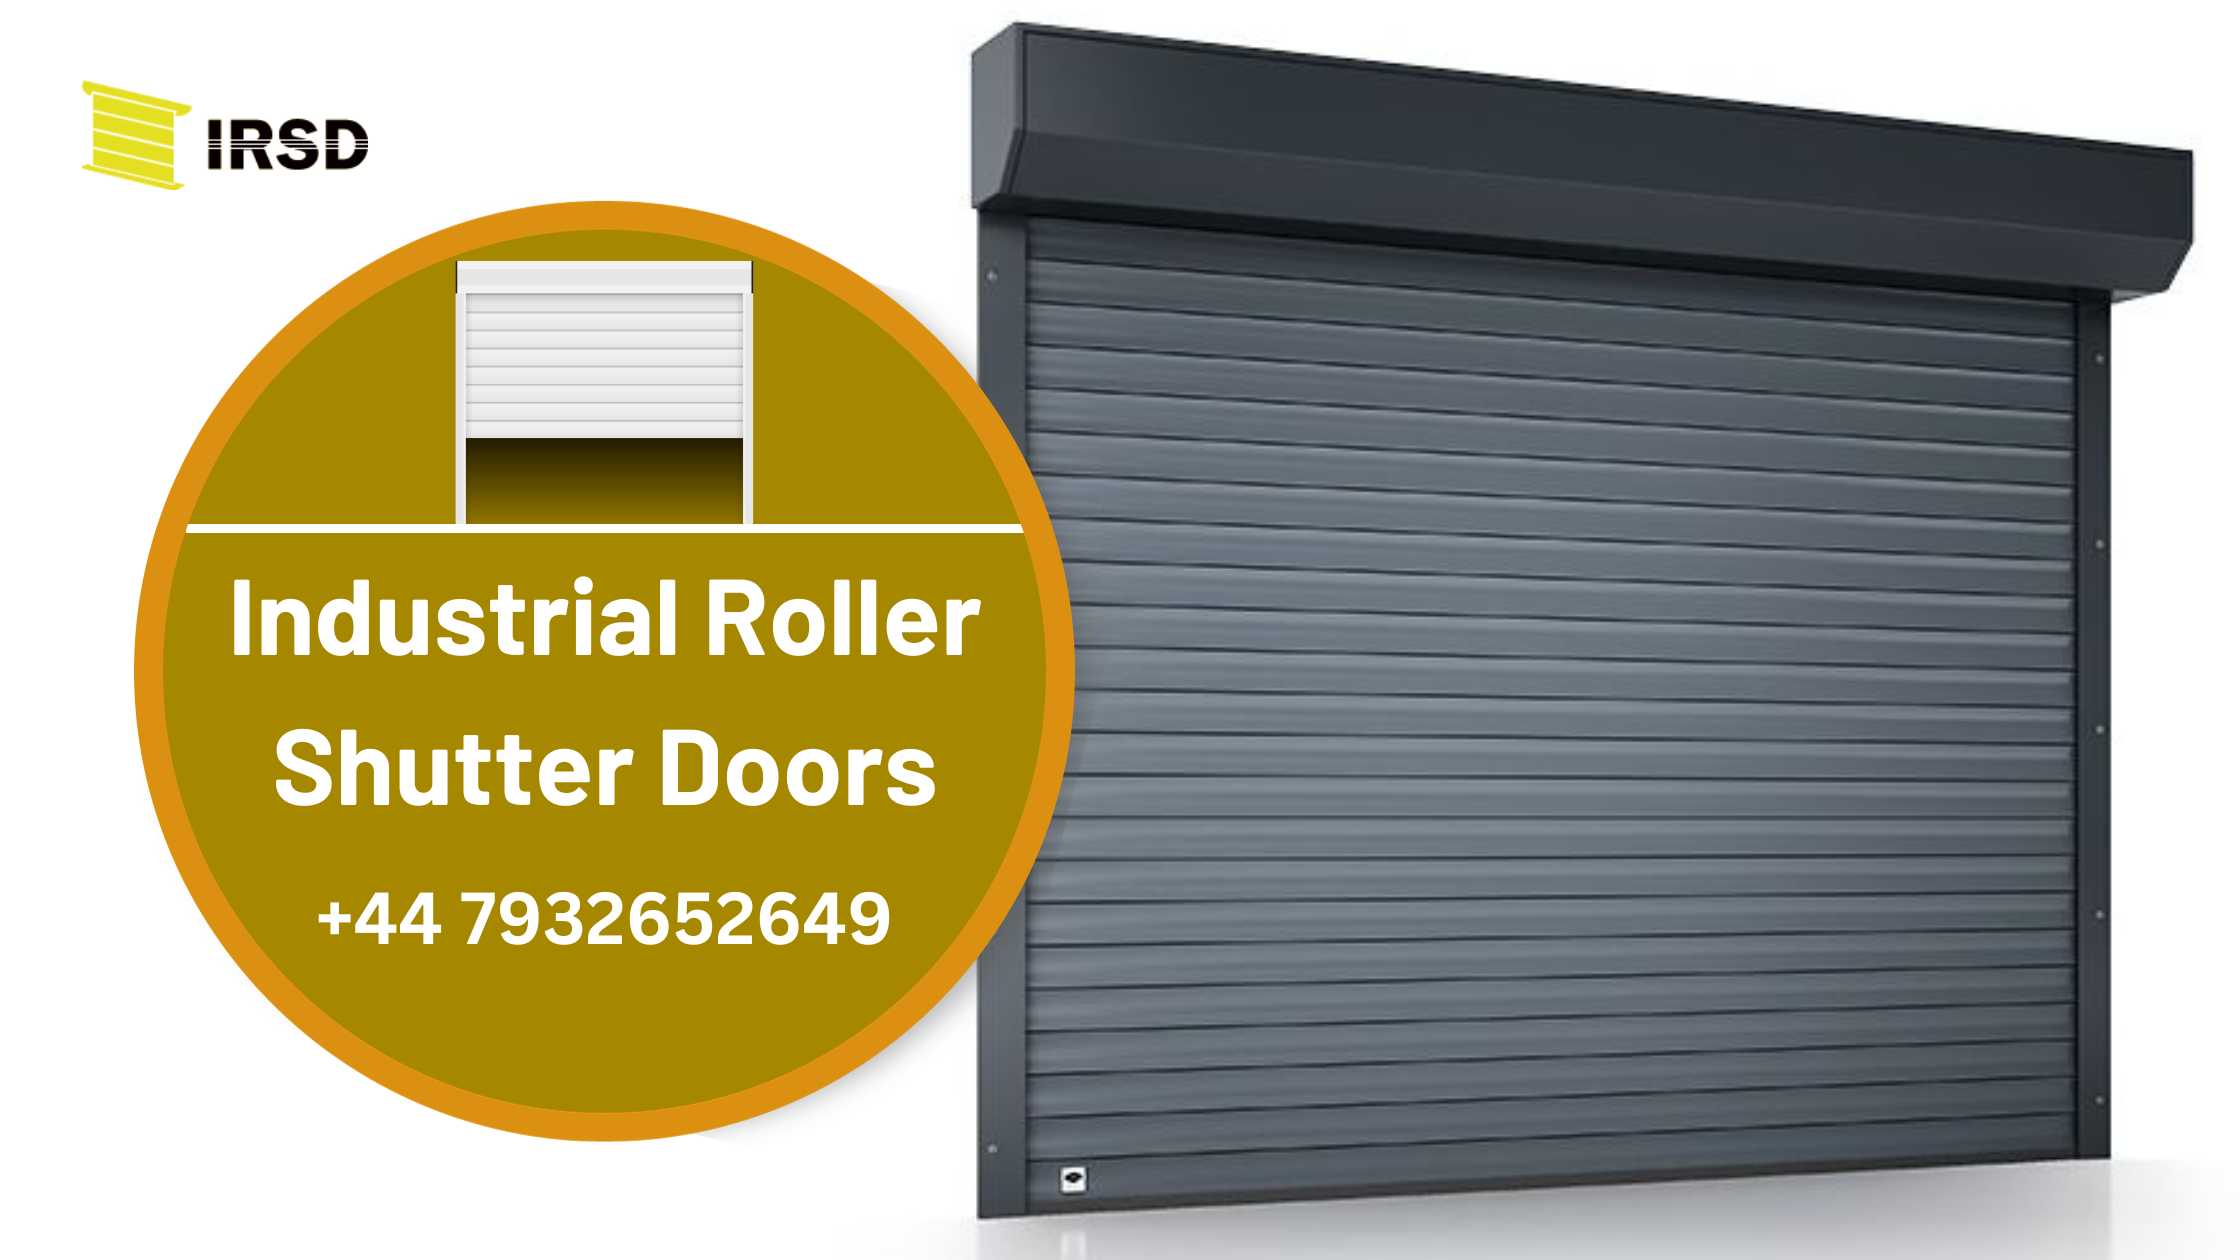 Industrial Roller Shutter Doors, Garage Shutter Doors